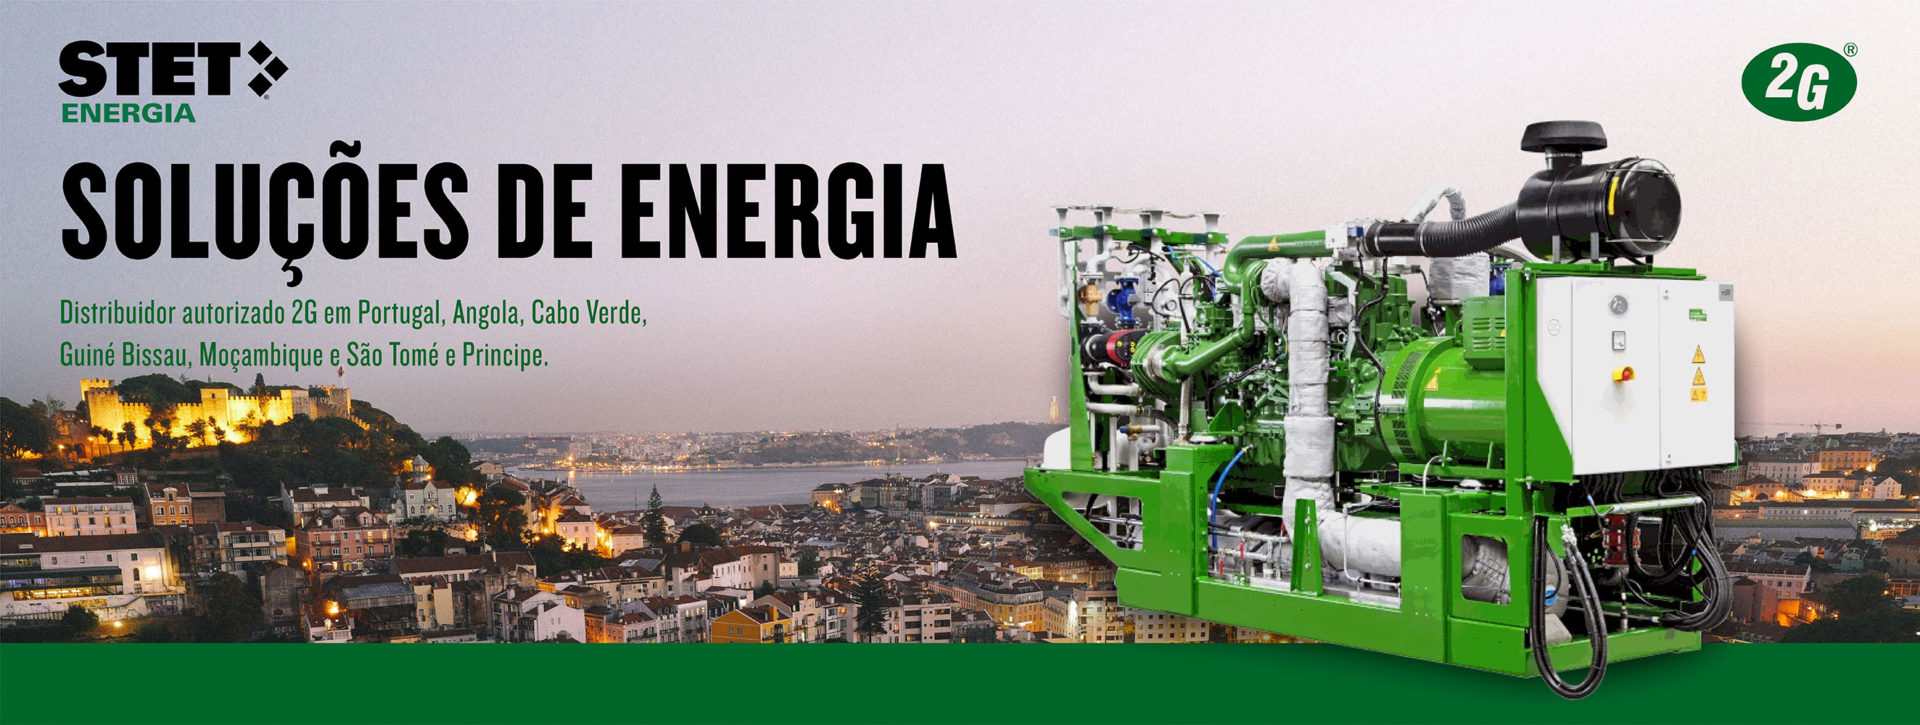 STET Portugal cria uma página online somente dedicada à divulgação da sua mais recente representação - Soluções de energia da marca alemã 2D